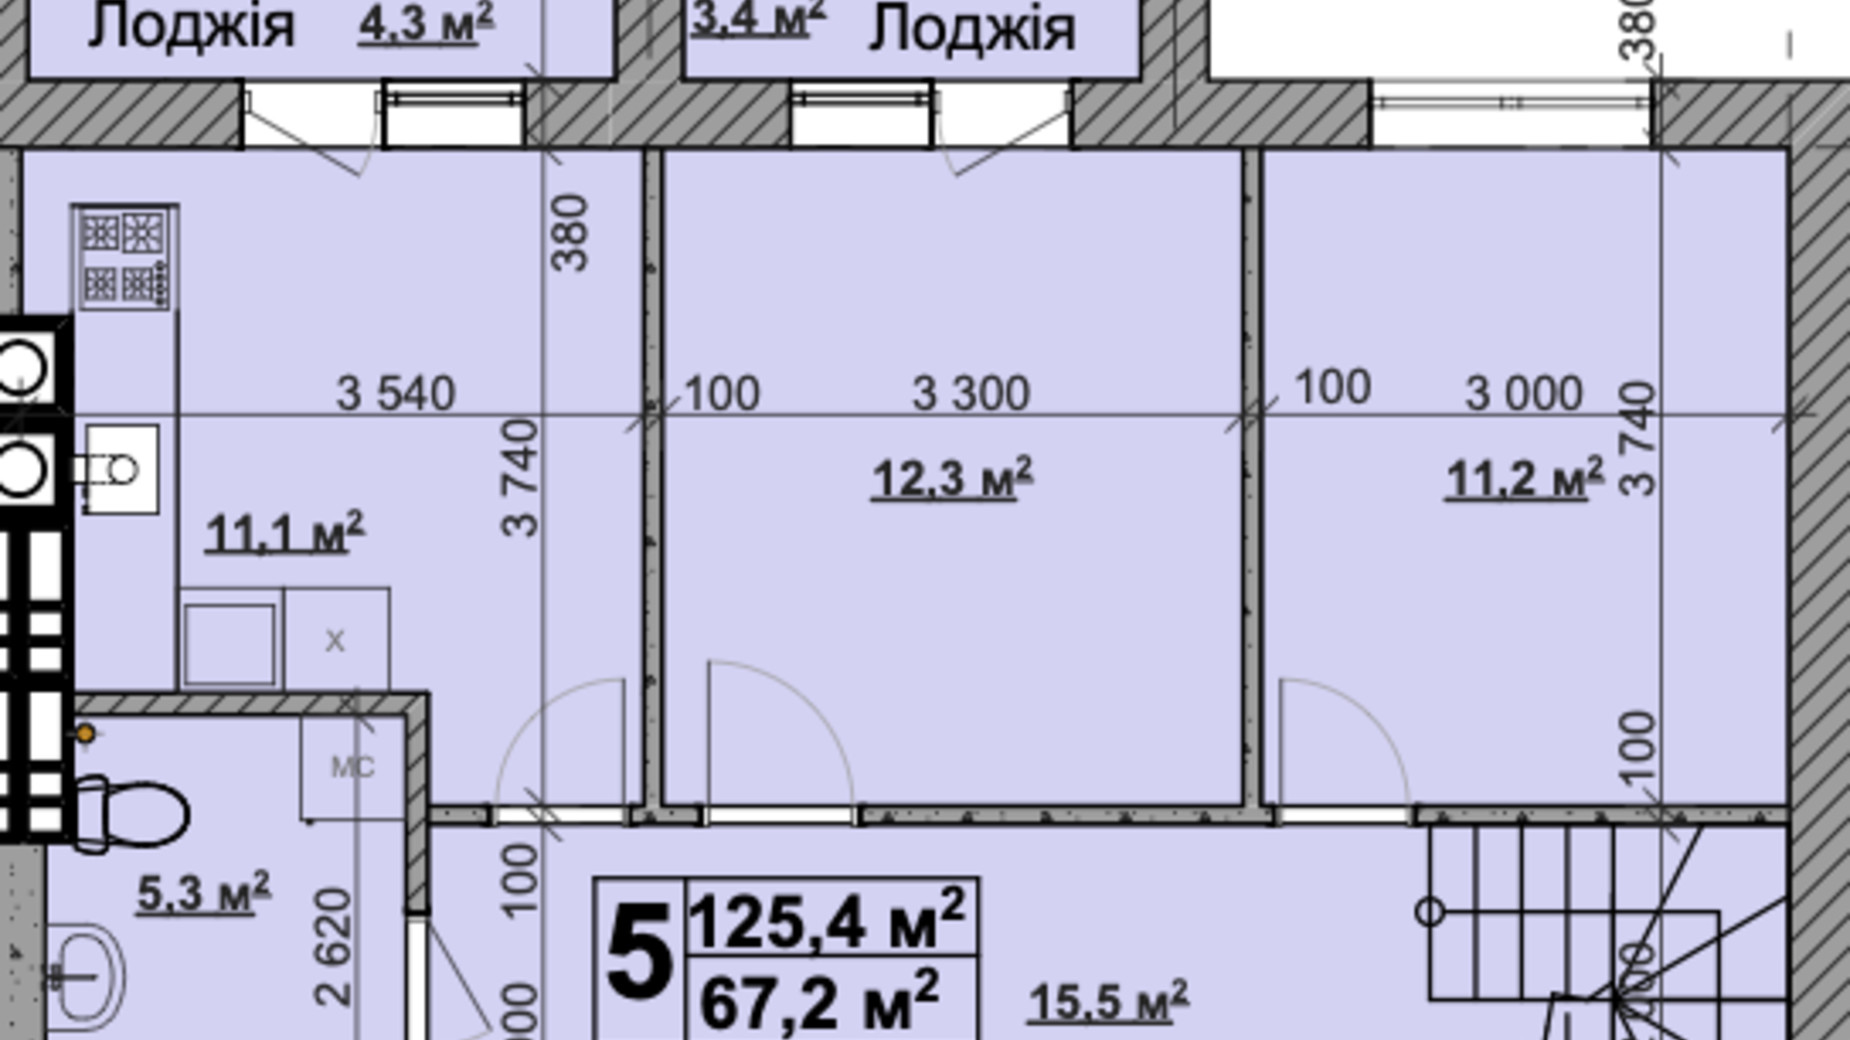 Планировка много­уровневой квартиры в ЖК Vilar 125.4 м², фото 431597